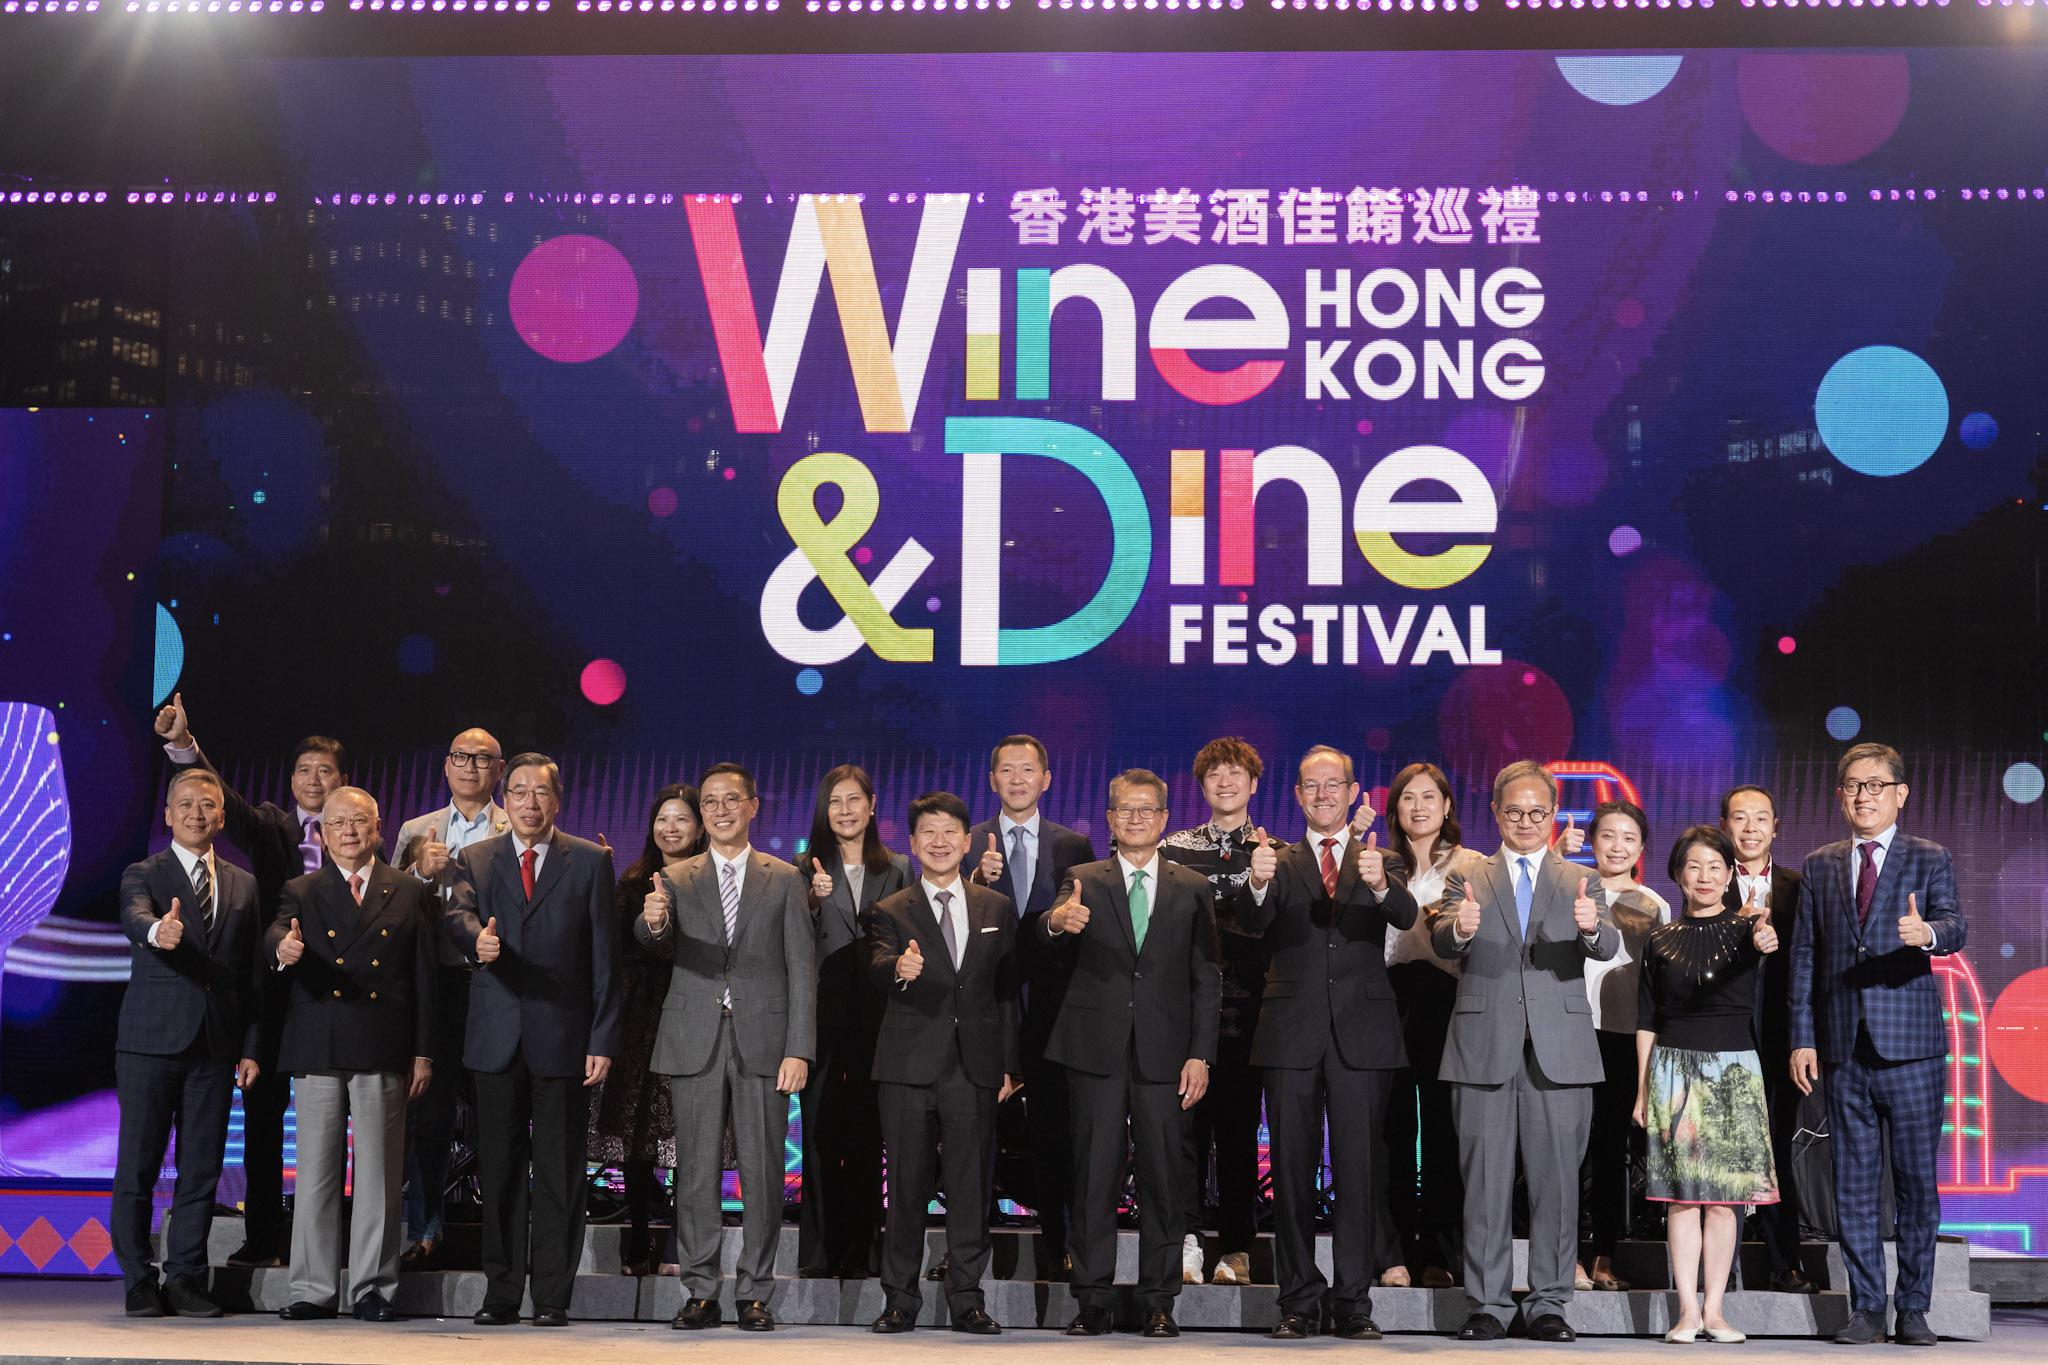 万通保险行政总裁叶嘉年先生(後排中)与一众主礼嘉宾为「香港美酒佳肴巡礼」揭开华丽序幕。